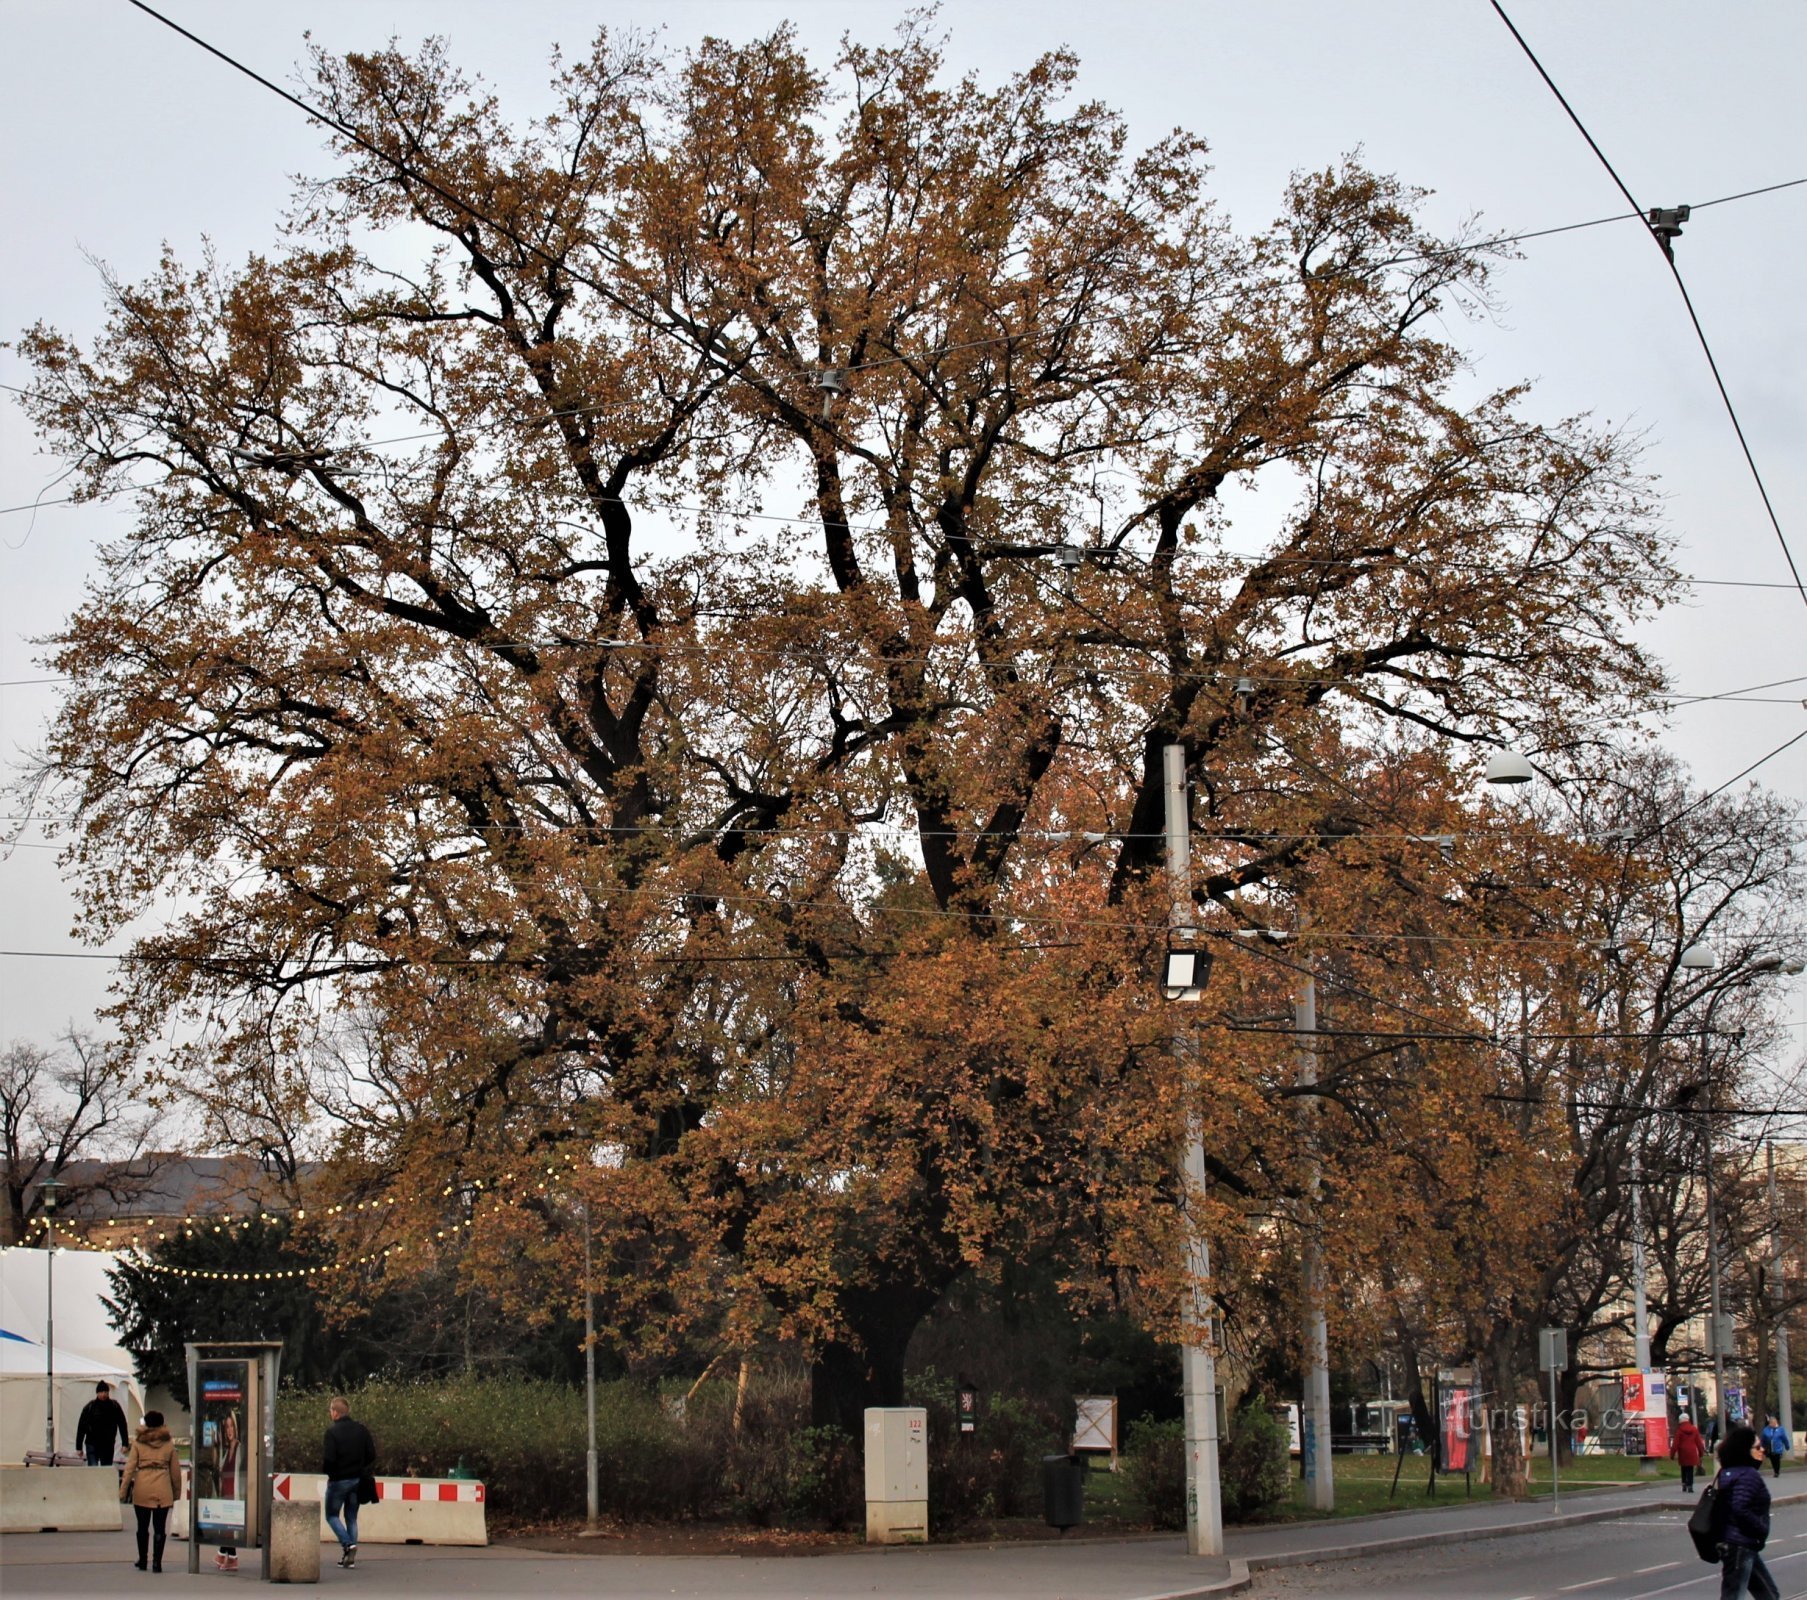 Brno - an oak tree at the entrance to Moravské náměstí